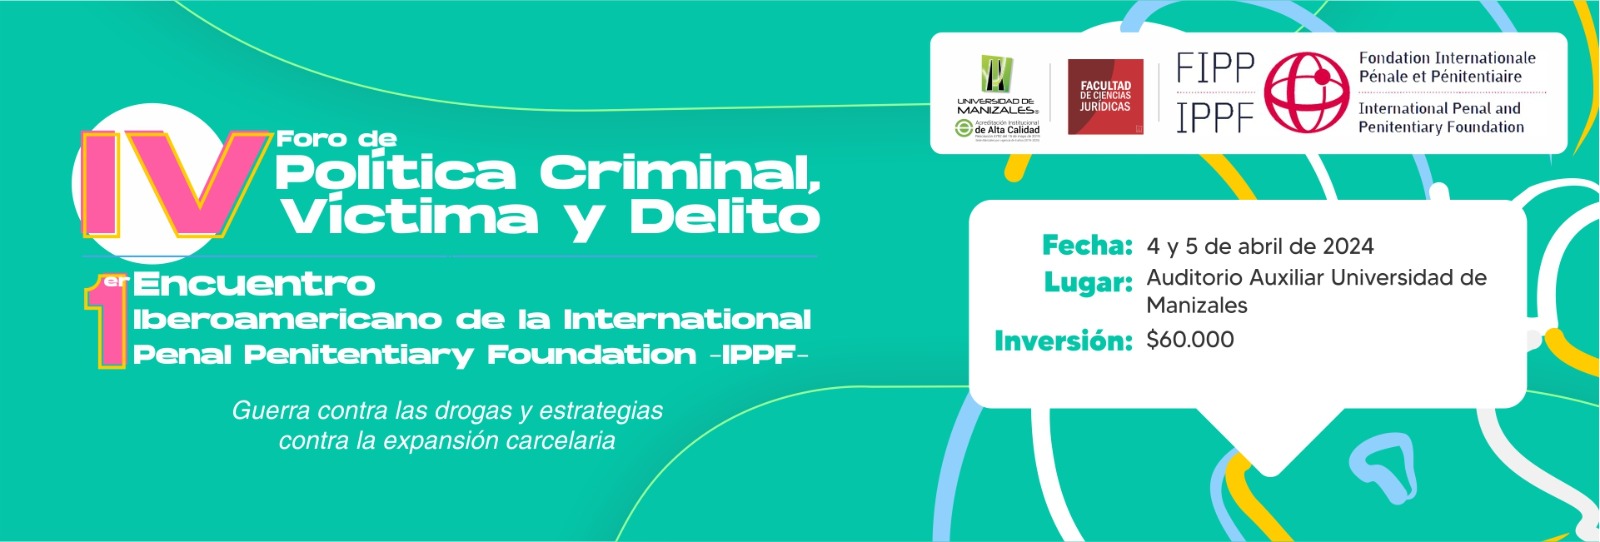 IV Foro de política criminal, víctima y delito y I Encuentro Regional de la IPPF-FIPP "Guerra contra las drogas y estrategias contra la expansión carcelaria"